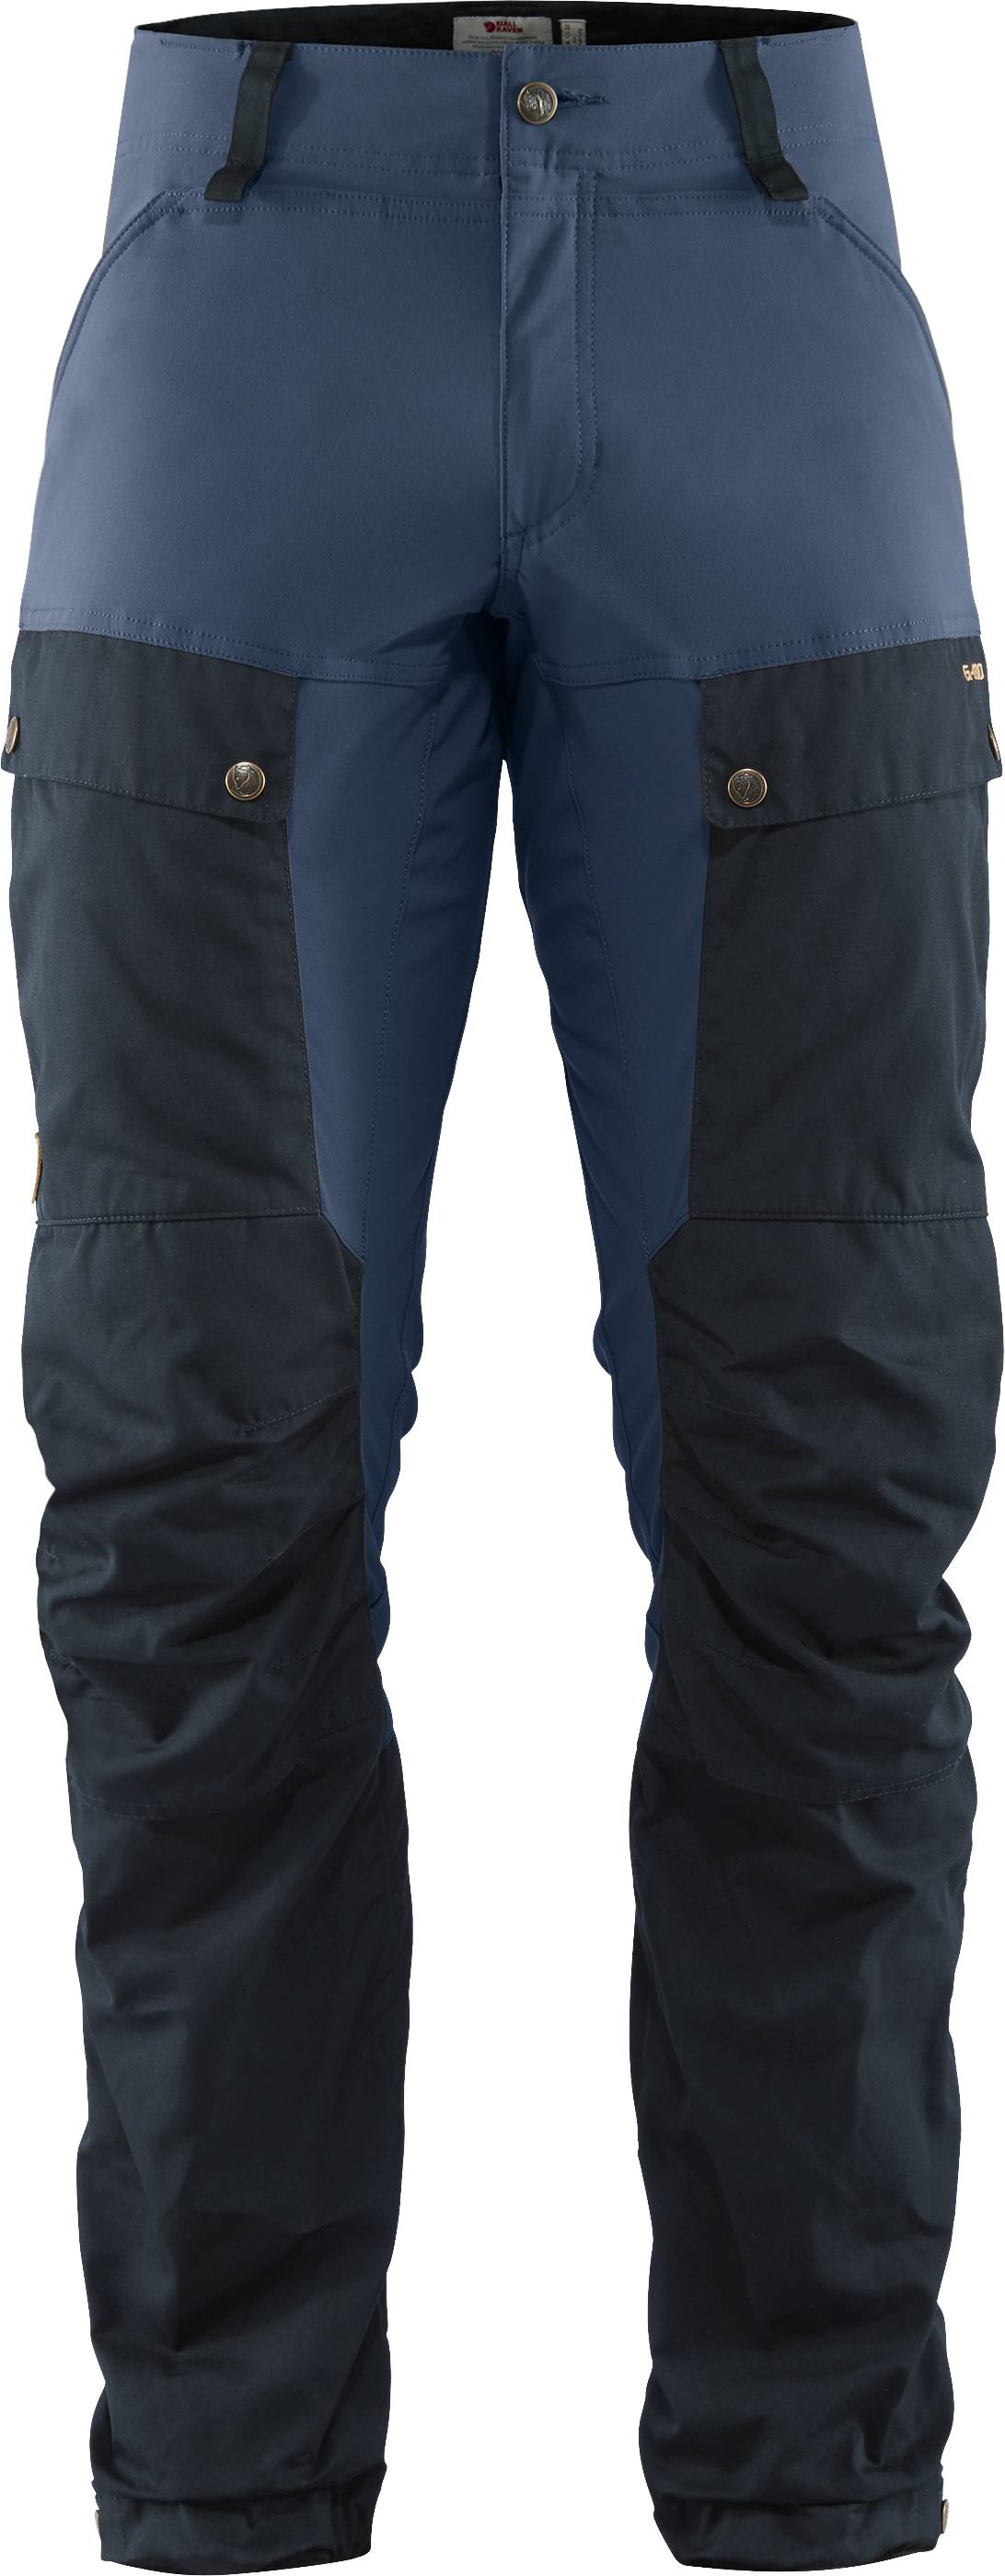 Keb Trousers Regular Dark navy / Uncle blue 46